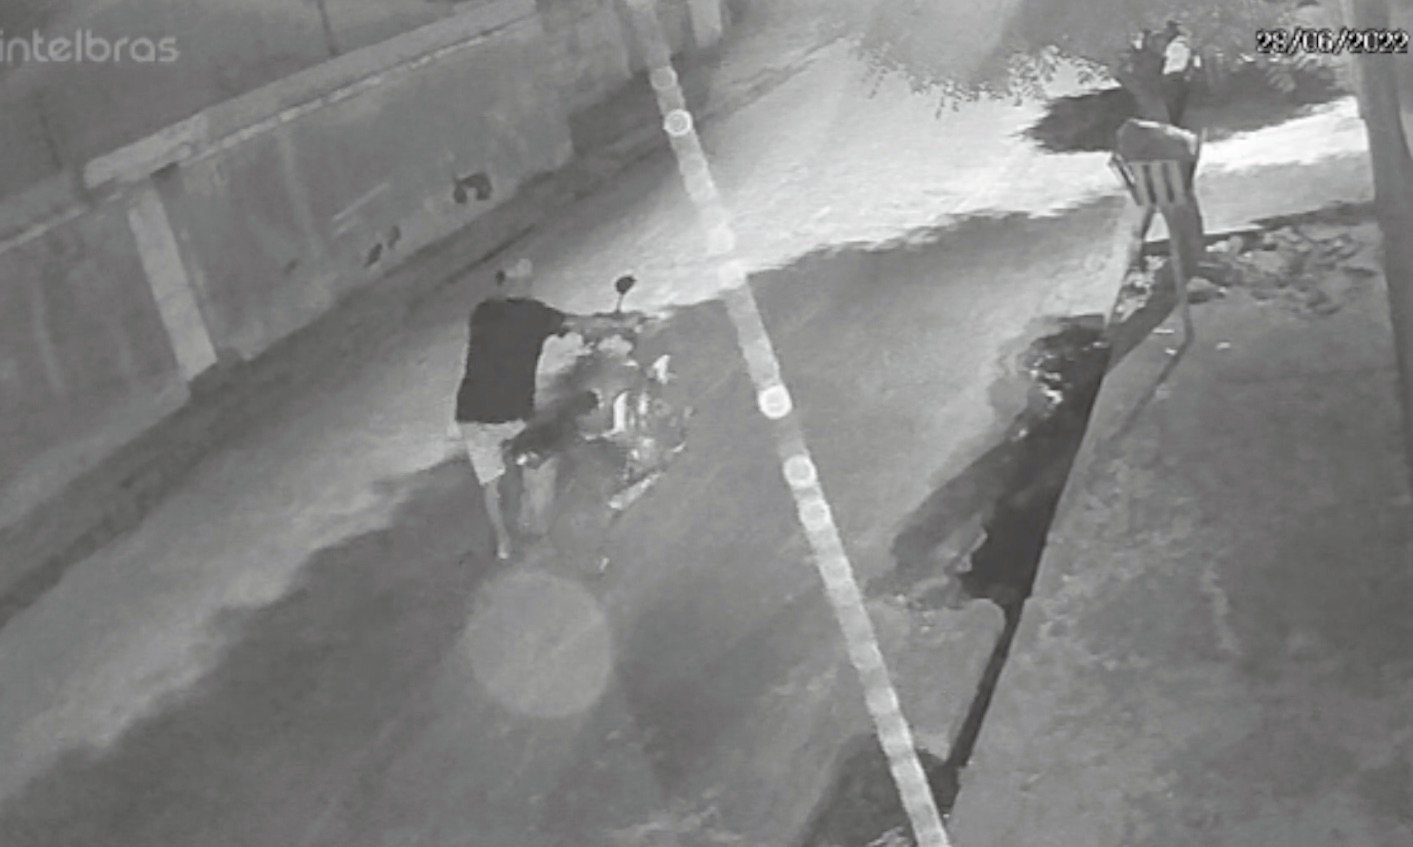 Criminoso furtou motocicleta de dentro de distrito - Foto: Reprodução